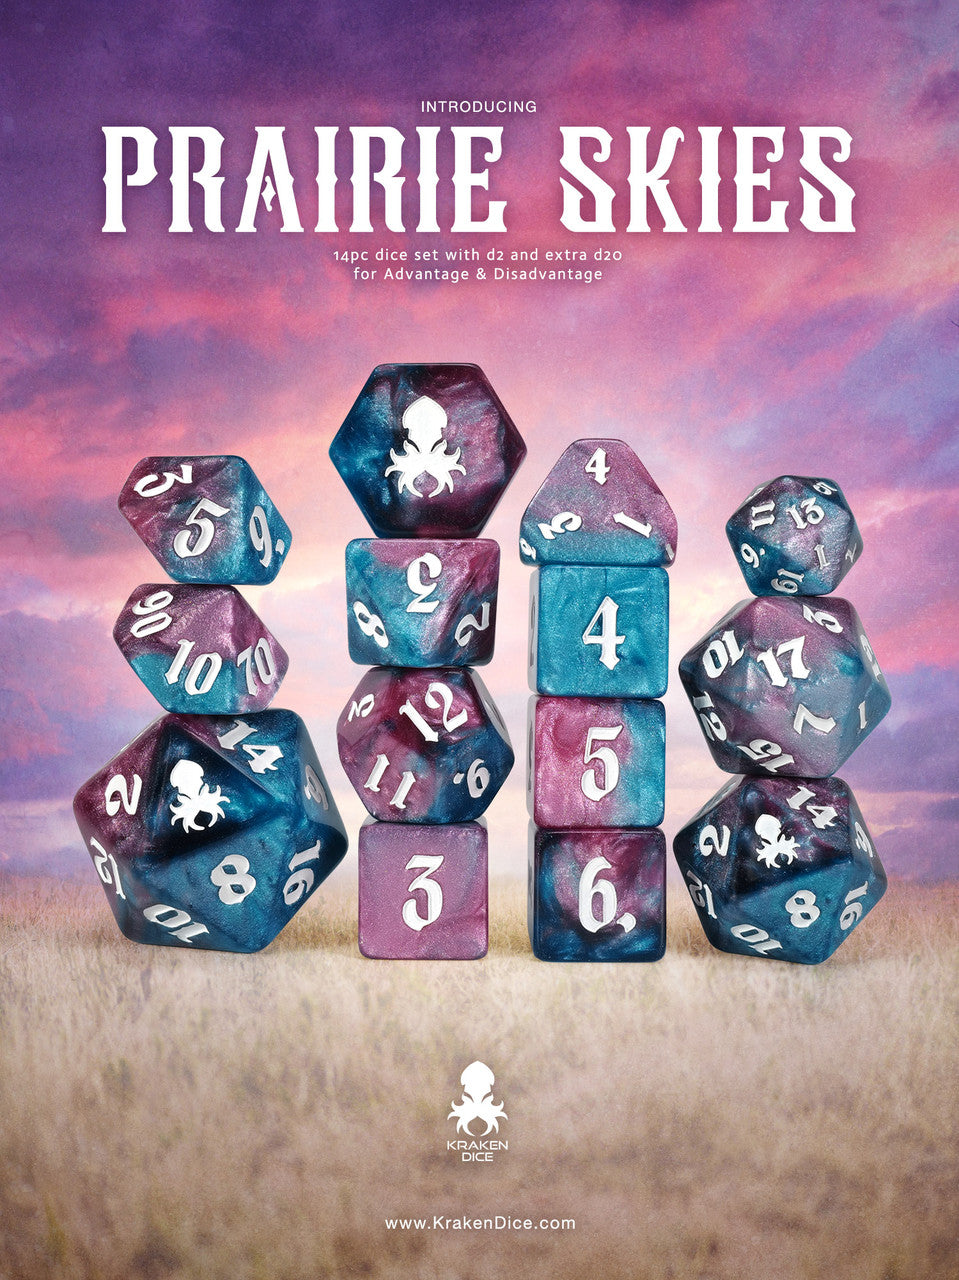 Prairie Skies 14pc Dice Set inked in Silver